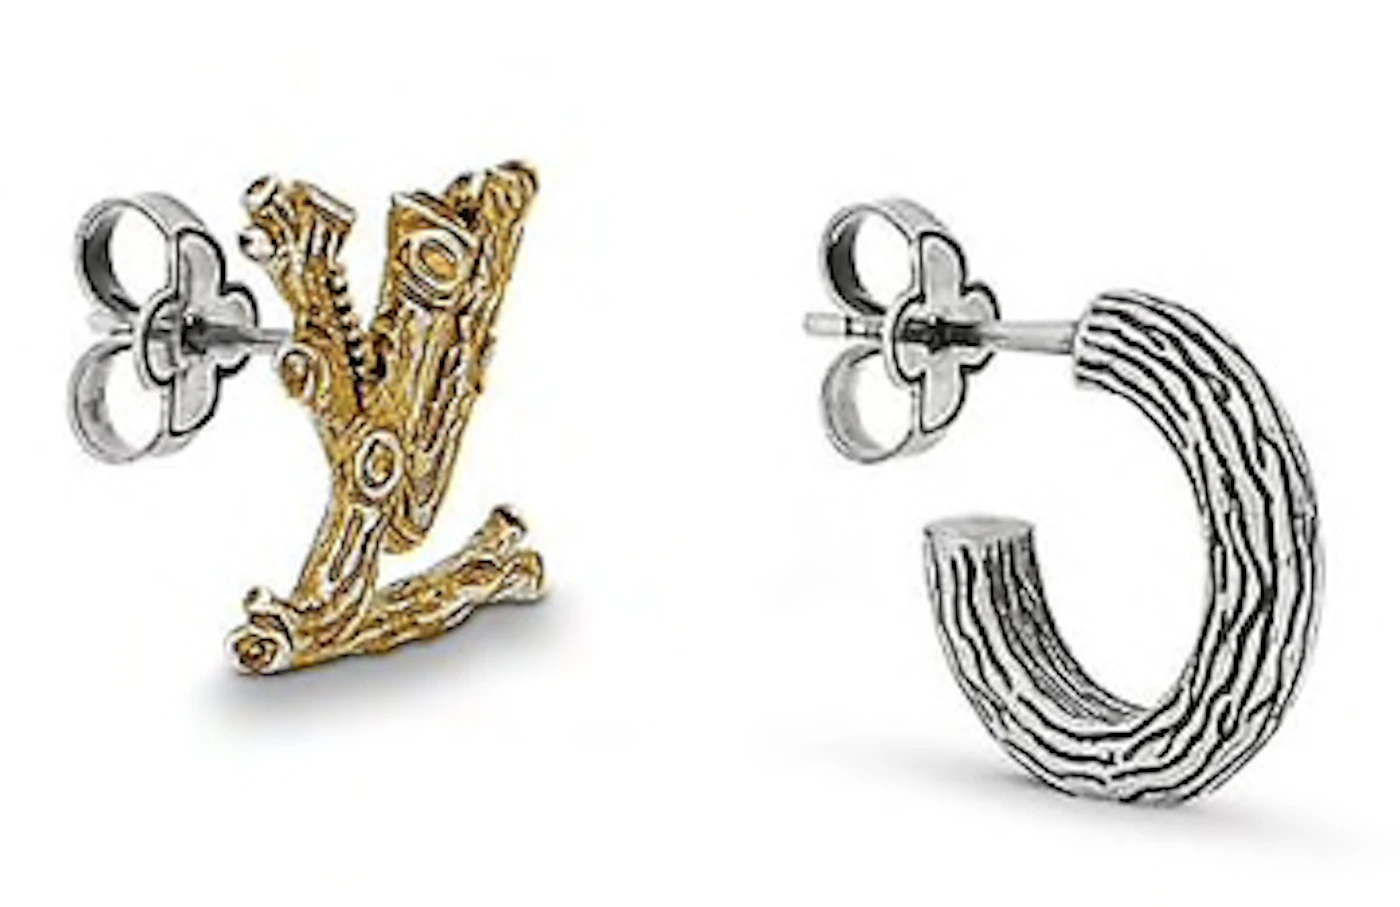 Louis Vuitton Louisette Stud Earrings - Gold-Tone Metal Stud, Earrings -  LOU448782